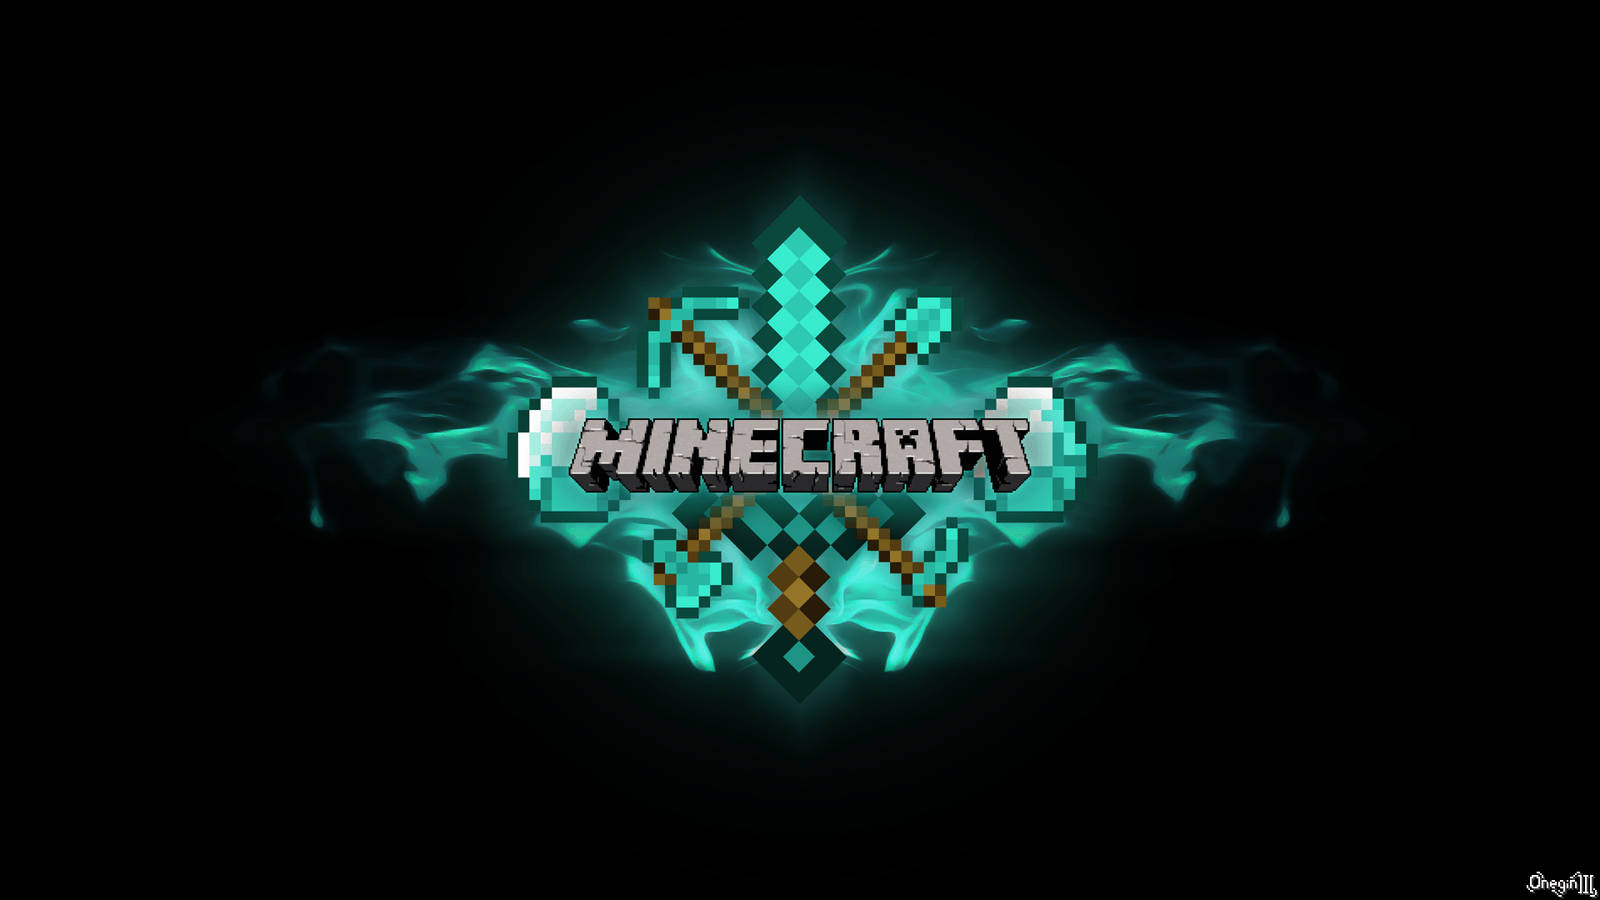 Minecraft #2 [2560x1440]  Minecraft logo, Minecraft wallpaper, Minecraft  games